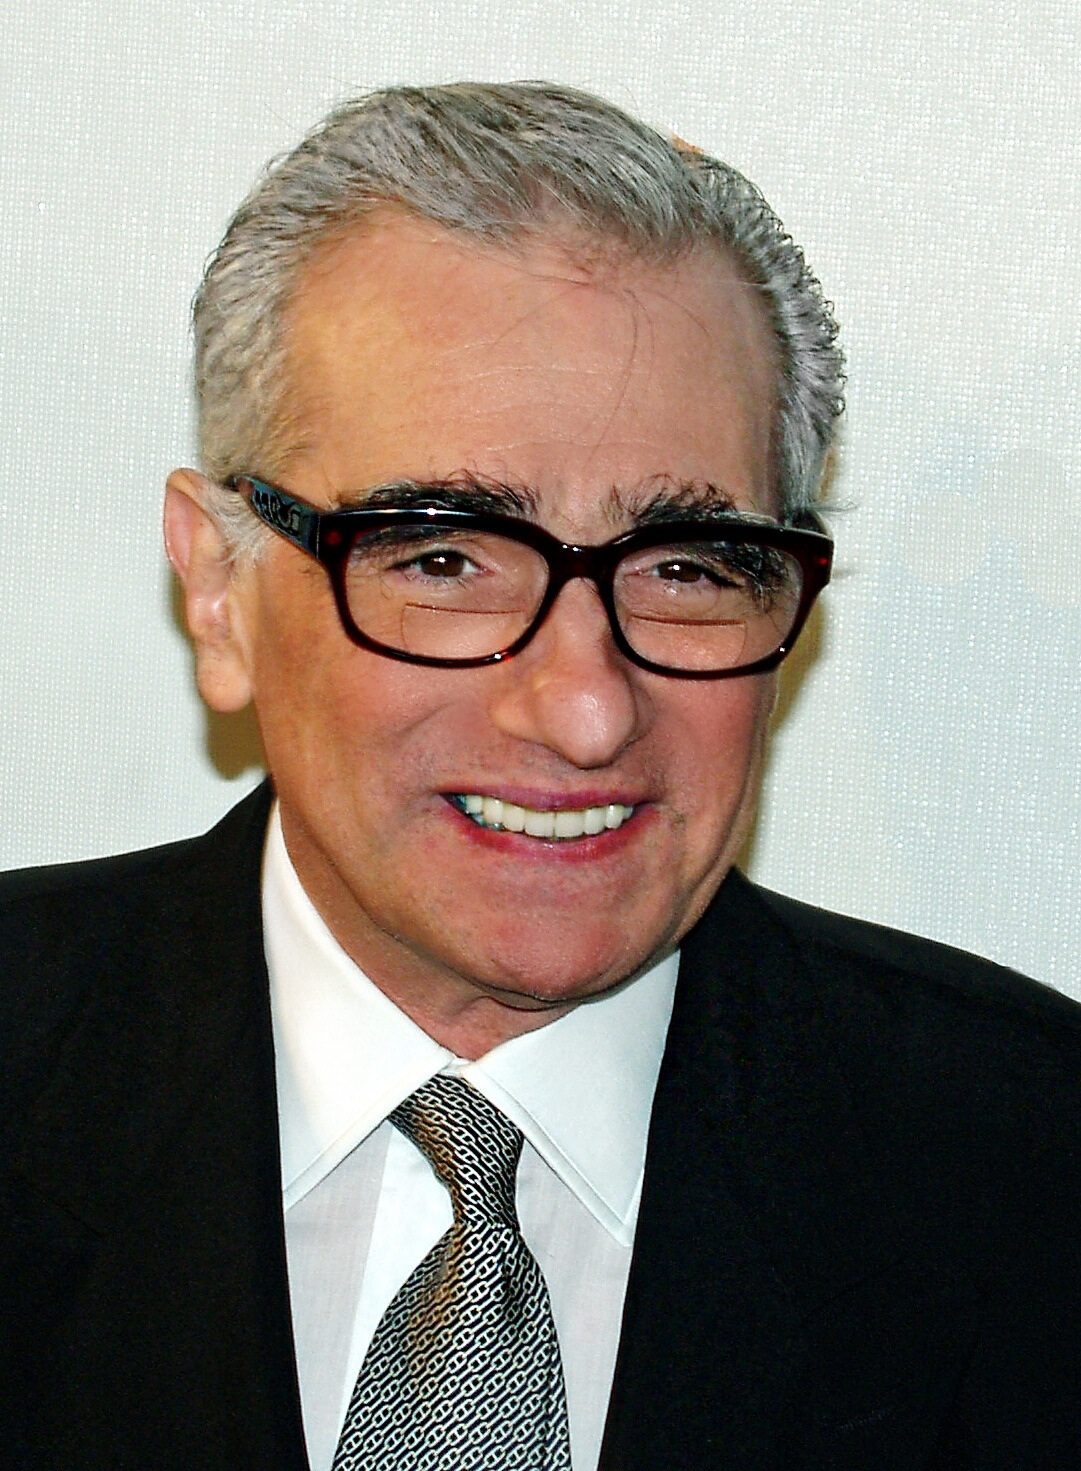 Scorsese